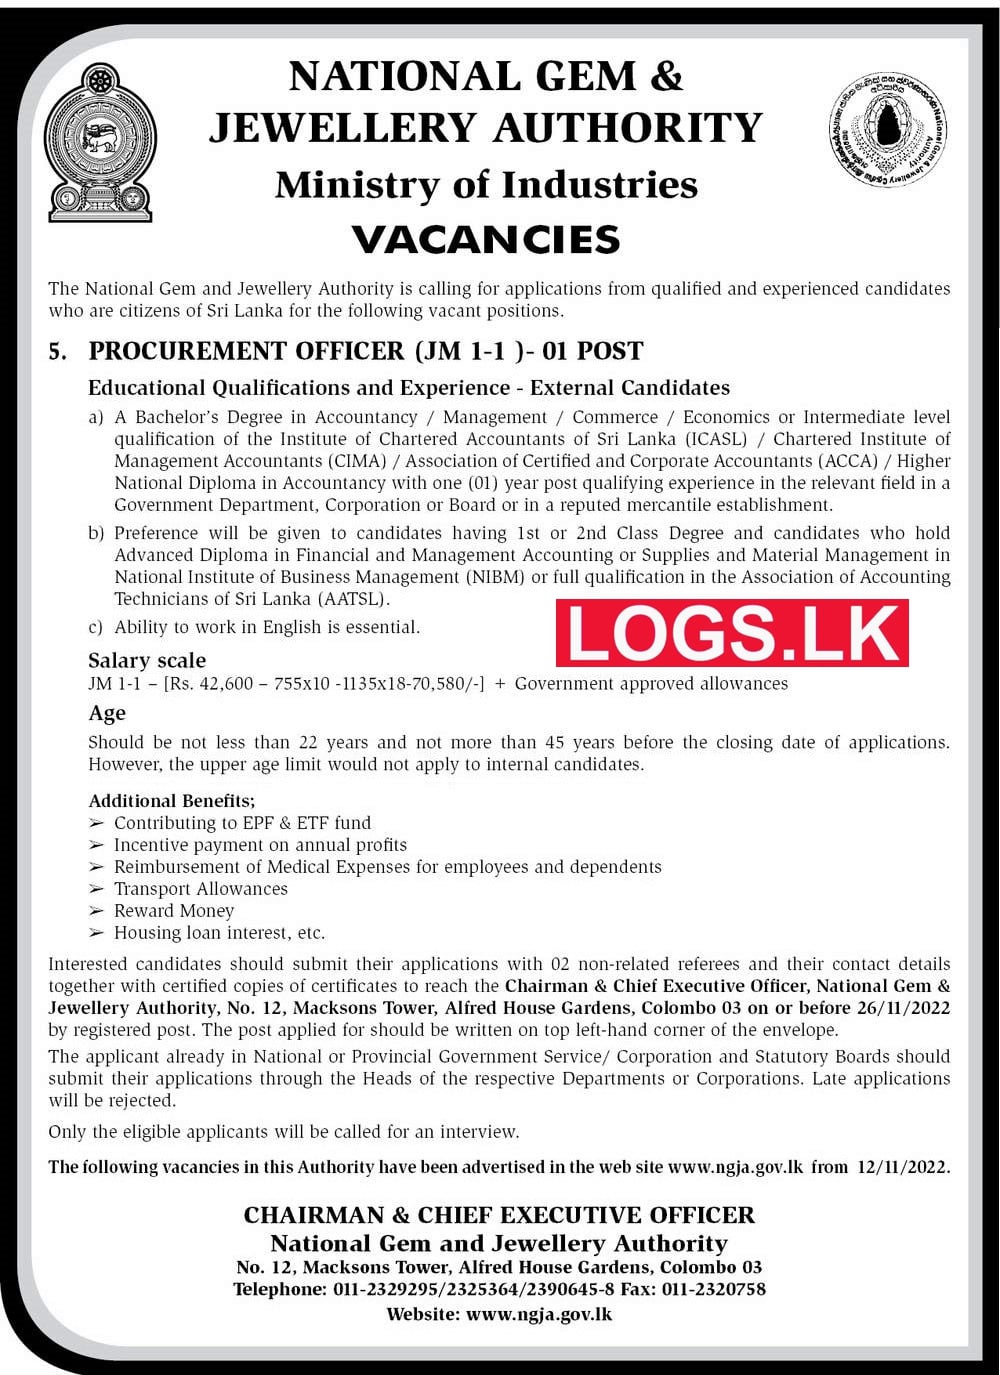 Procurement Officer Job Vacancy in National Gem & Jewellery Authority Jobs Vacancies